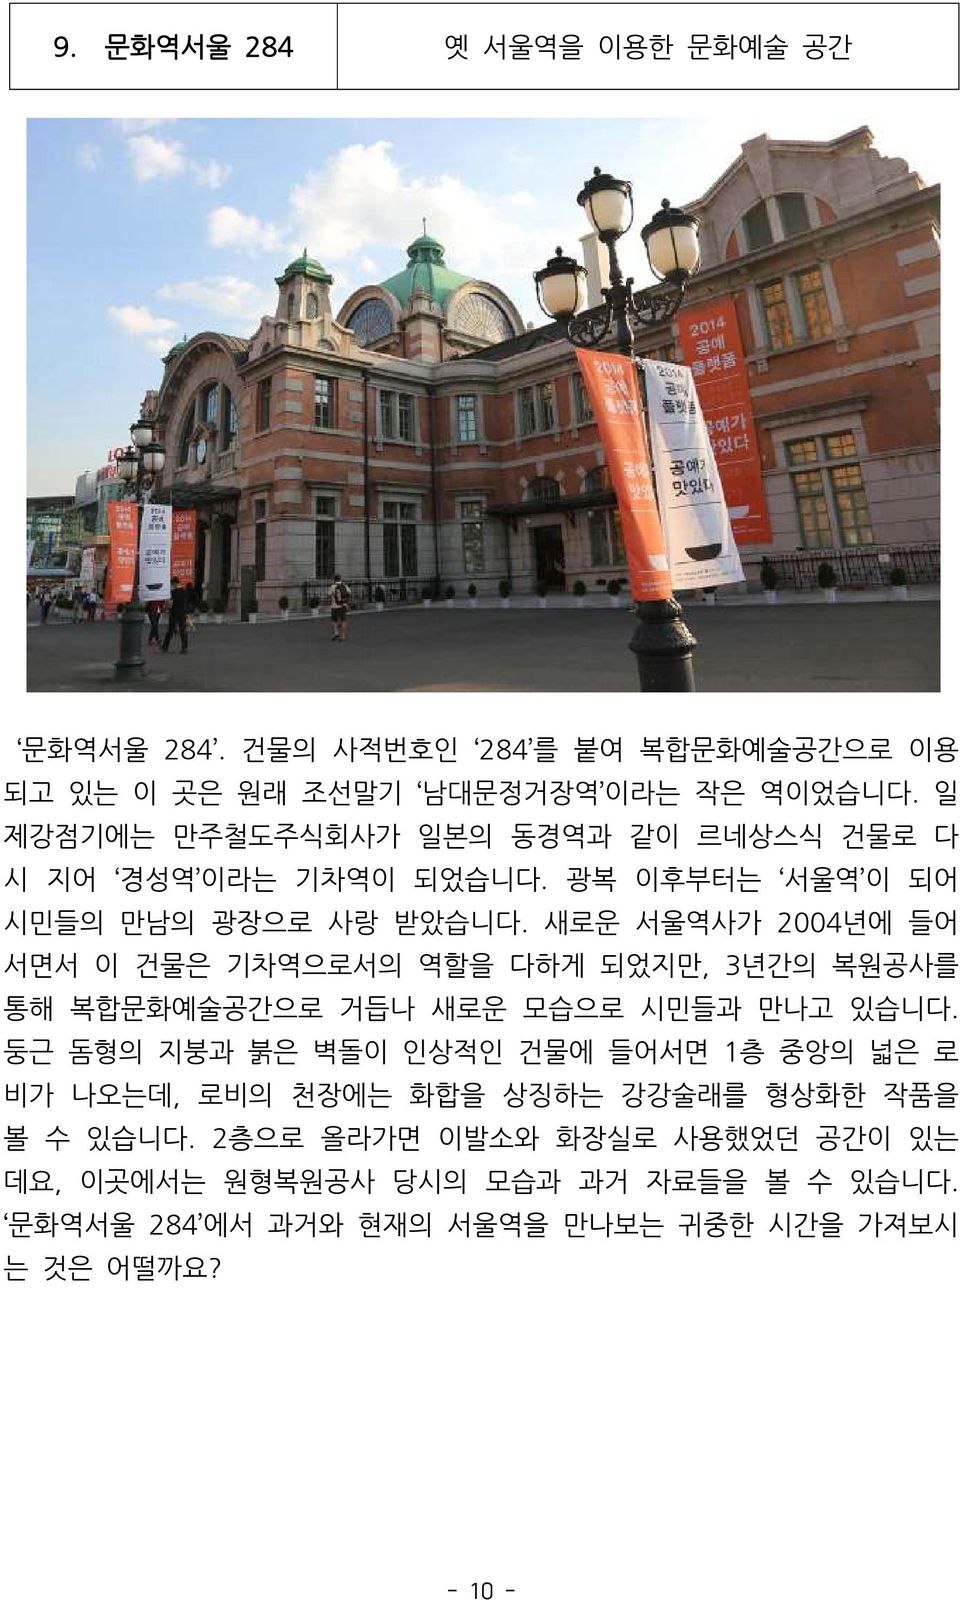 새로운 서울역사가 2004년에 들어 서면서 이 건물은 기차역으로서의 역할을 다하게 되었지만, 3년간의 복원공사를 통해 복합문화예술공간으로 거듭나 새로운 모습으로 시민들과 만나고 있습니다.